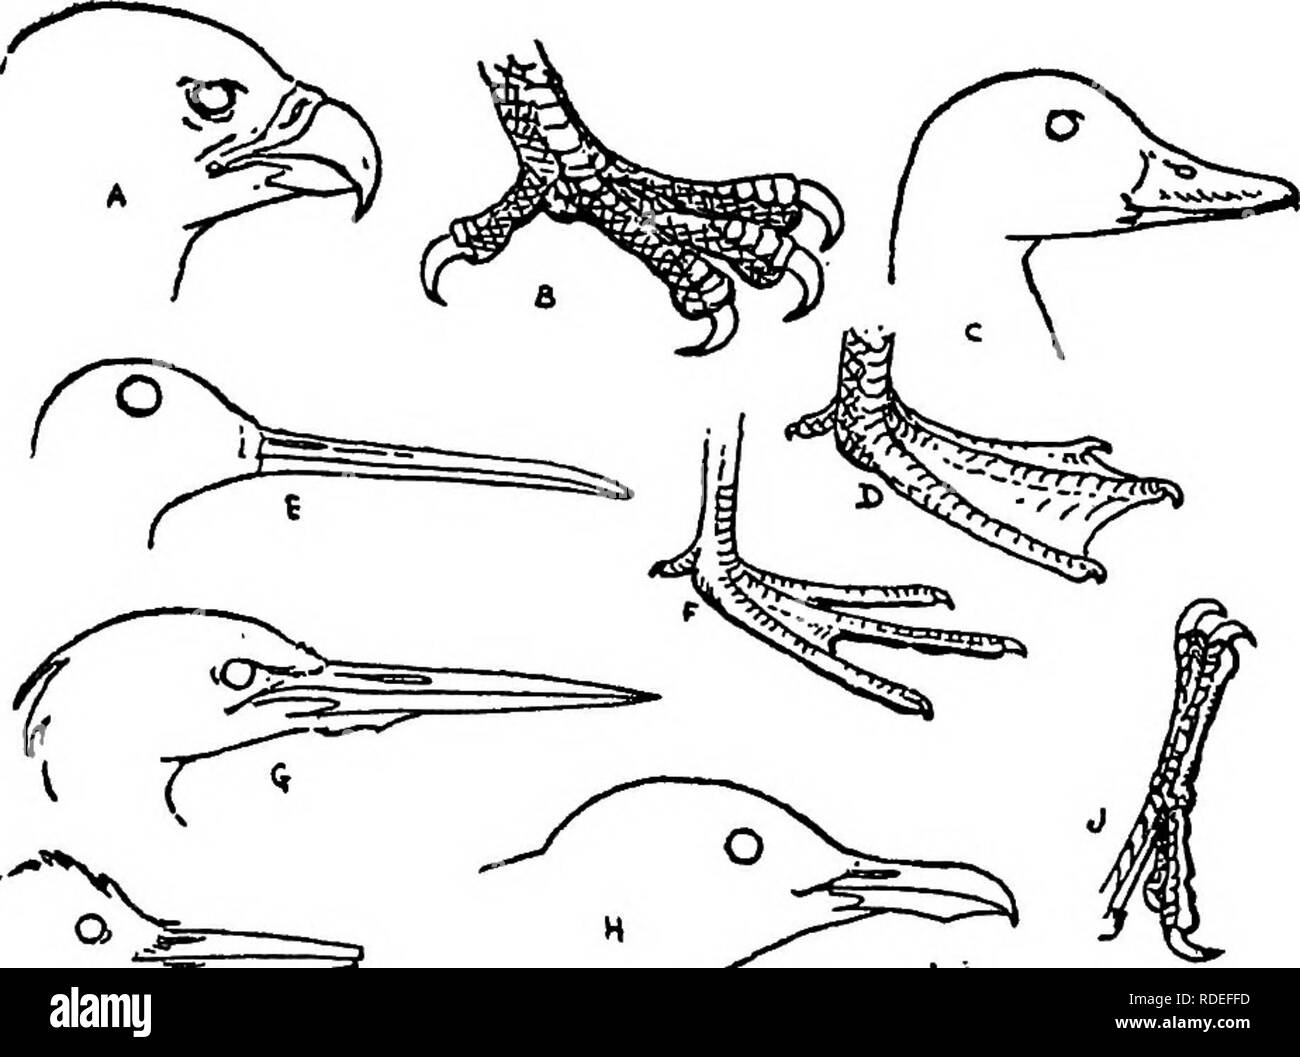 . Der Vogel. Vögel, Vögel. Erste Bekanntschaft mit Vögeln. /^' A. B. C. D. E. F. G. H. J. Fleischfressende (Hawk) Fuß mit Fleisch fressenden Vogel (Adler) Wasservögel (Enten) Fuß der Schwimmer (Ente) Prober (Snipe) Fuß von Wader (Snipe & gt; Langbeinige Wader (Heron) Fisch Esser (Möwe) Fuß von Kletterpflanze (Specht) K.L.M.N.O. S. F.R.S.T. Korn Saatgut Eater" (Taube) Meißel (Specht) Boden des Schrägförderers ((Juail) Whip-poor-will 1 Schlucken&gt; am Flügel Schopftyrann) Fuß Land Vogelfutter Esser (Spatz) Allesfresser (Crow) Insekt und Grub Esser (Warbler) [II]. Bitte beachten Sie, dass diese Bilder extrahiert werden fr Stockfoto